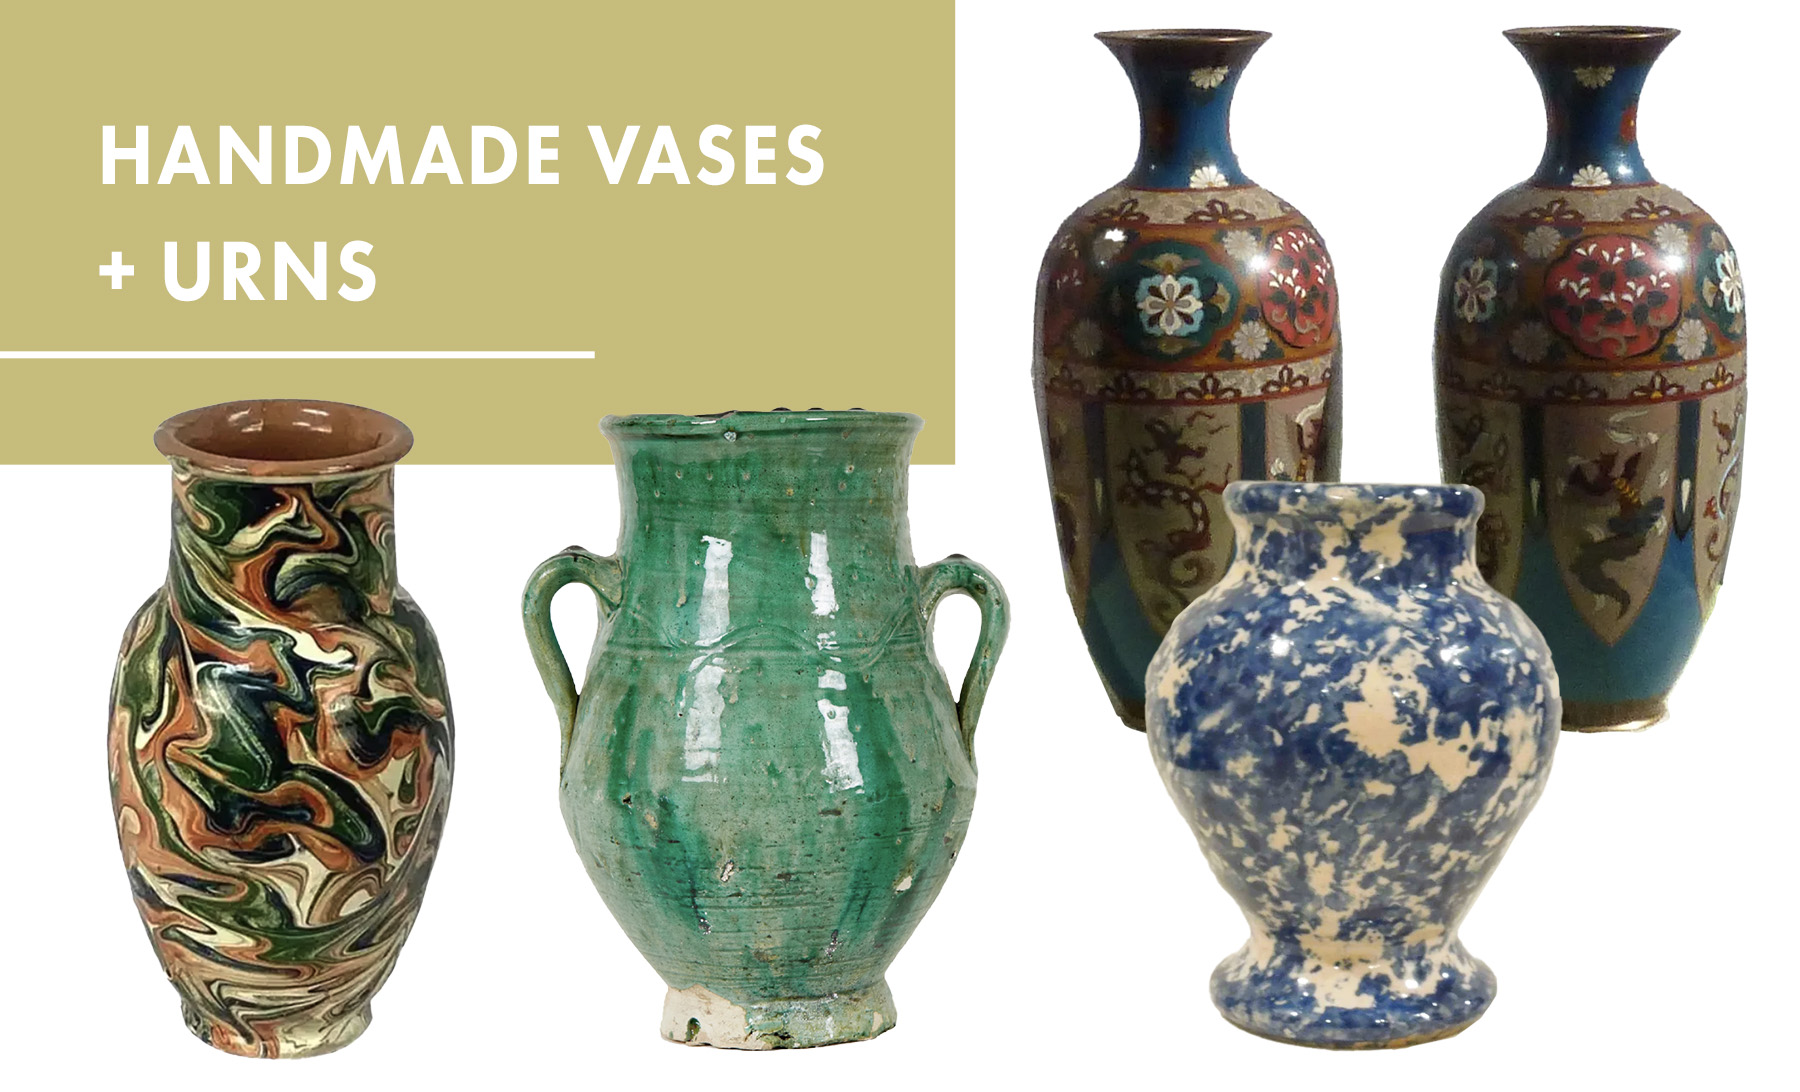 Handmade vases + urns